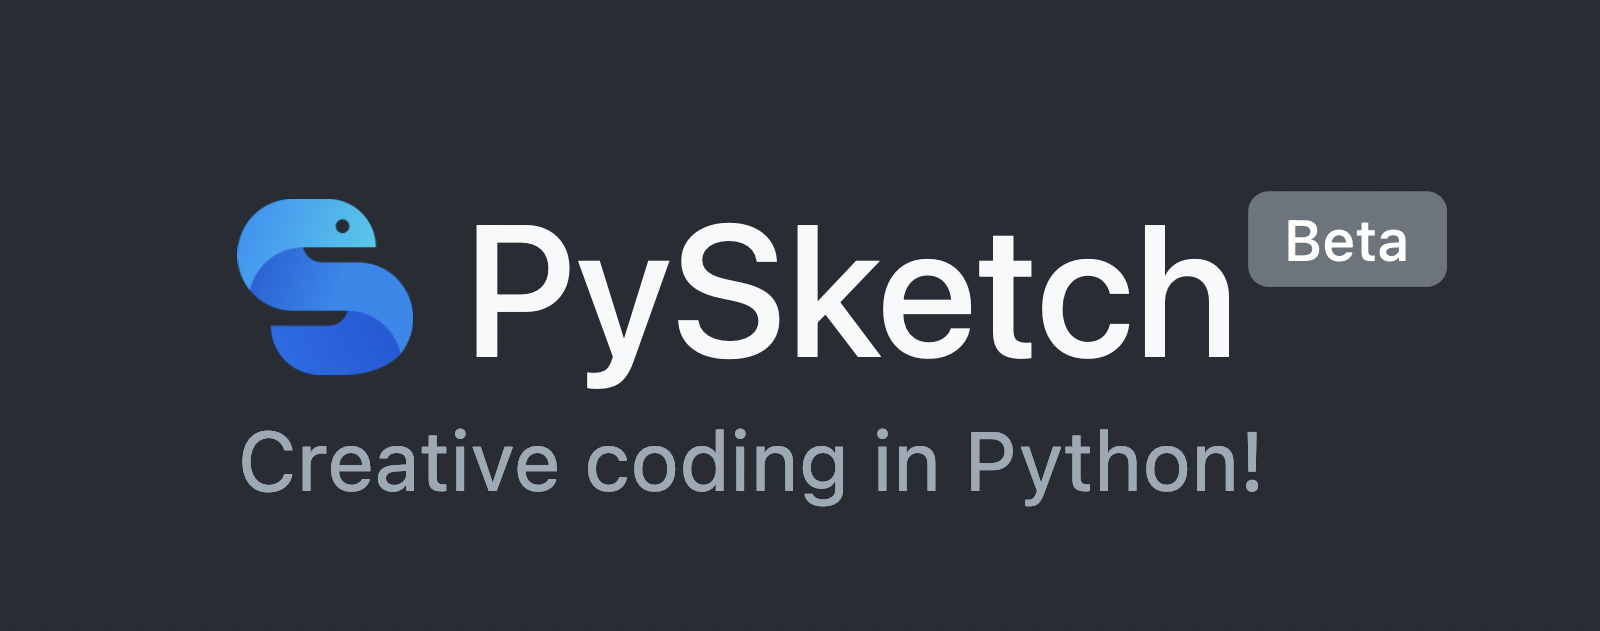 pysketch.com